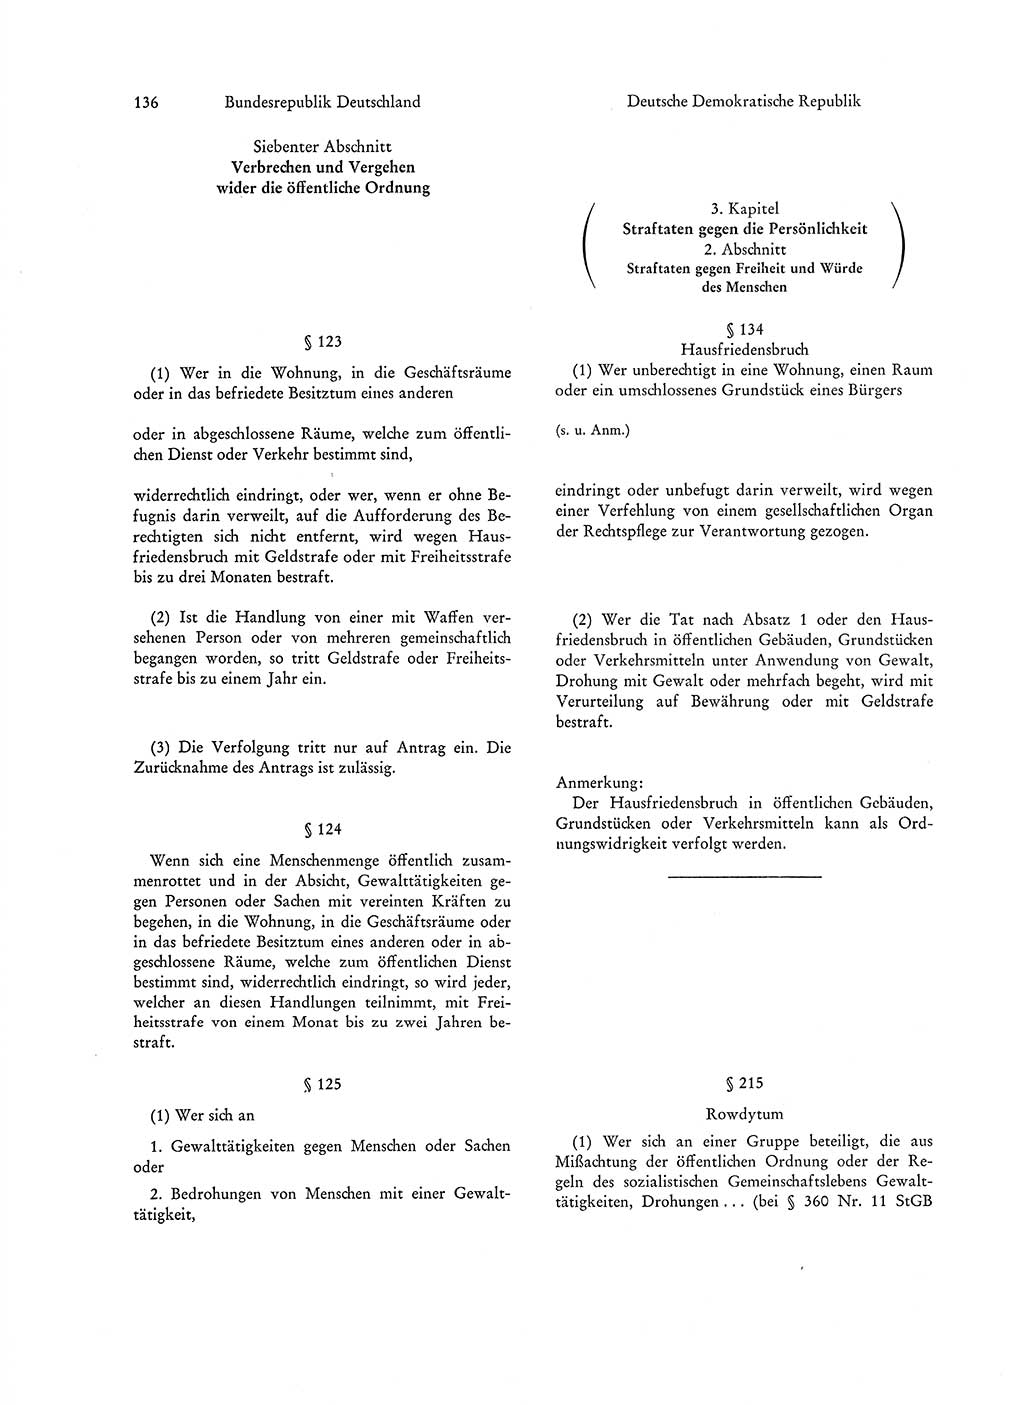 Strafgesetzgebung in Deutschland [Bundesrepublik Deutschland (BRD) und Deutsche Demokratische Republik (DDR)] 1972, Seite 136 (Str.-Ges. Dtl. StGB BRD DDR 1972, S. 136)